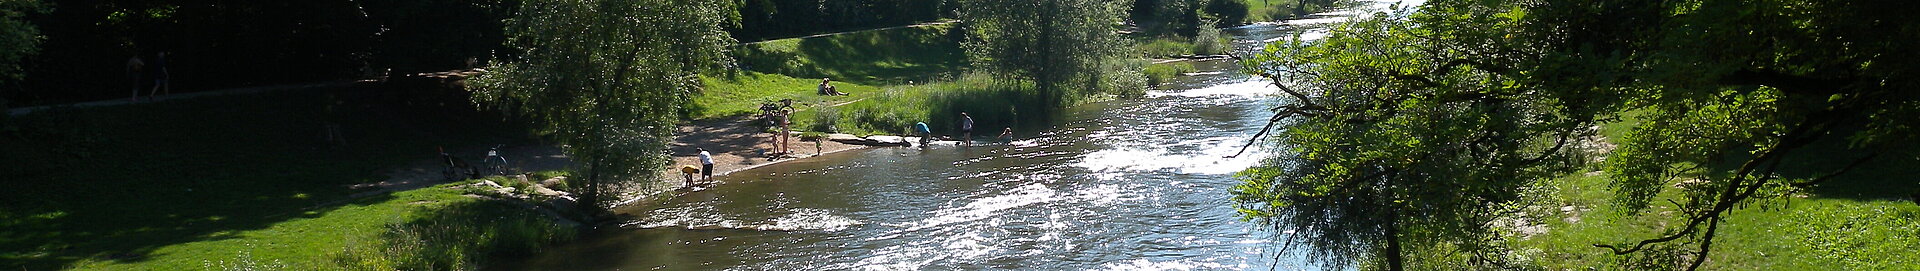 Landschaftspark Wiese - baden im Fluss